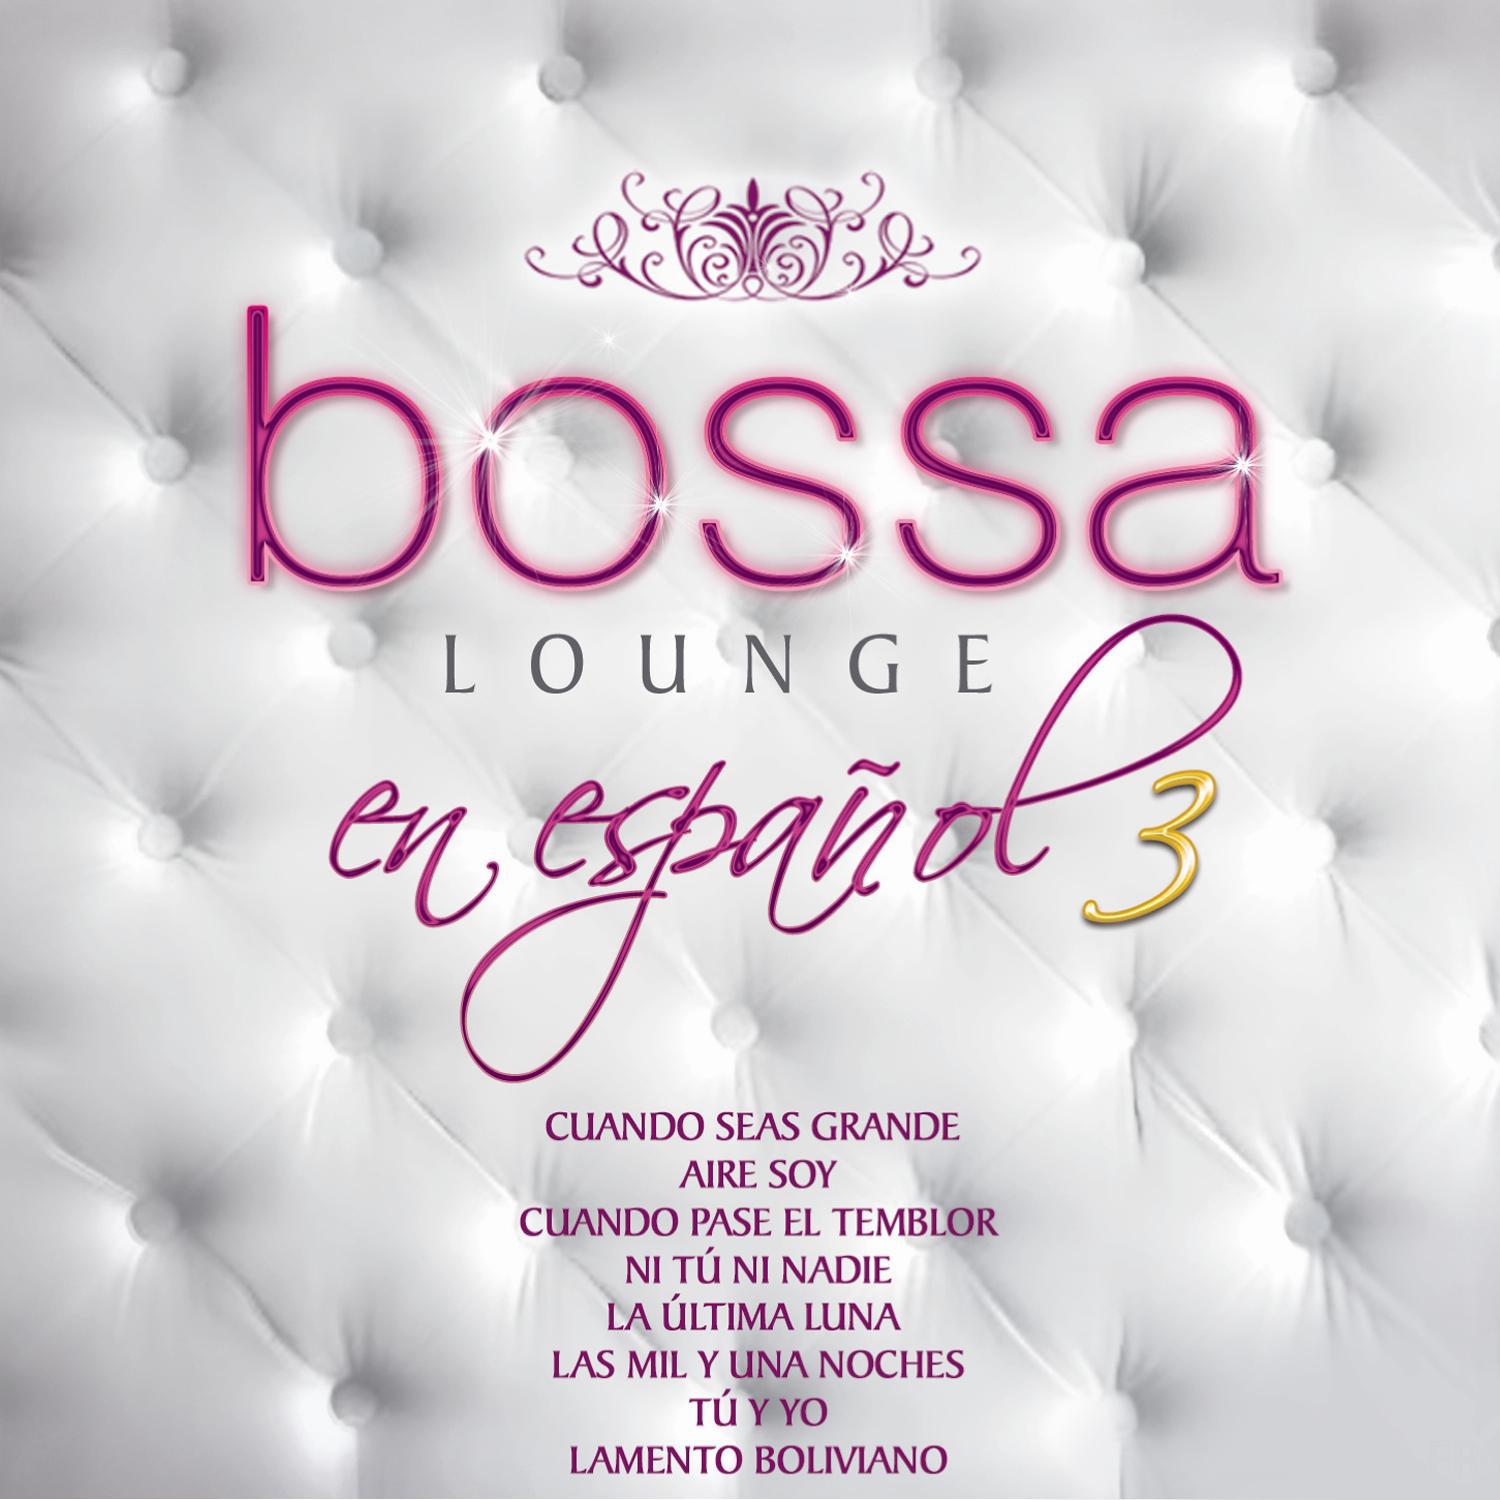 Más Bossa Lounge en Español 3